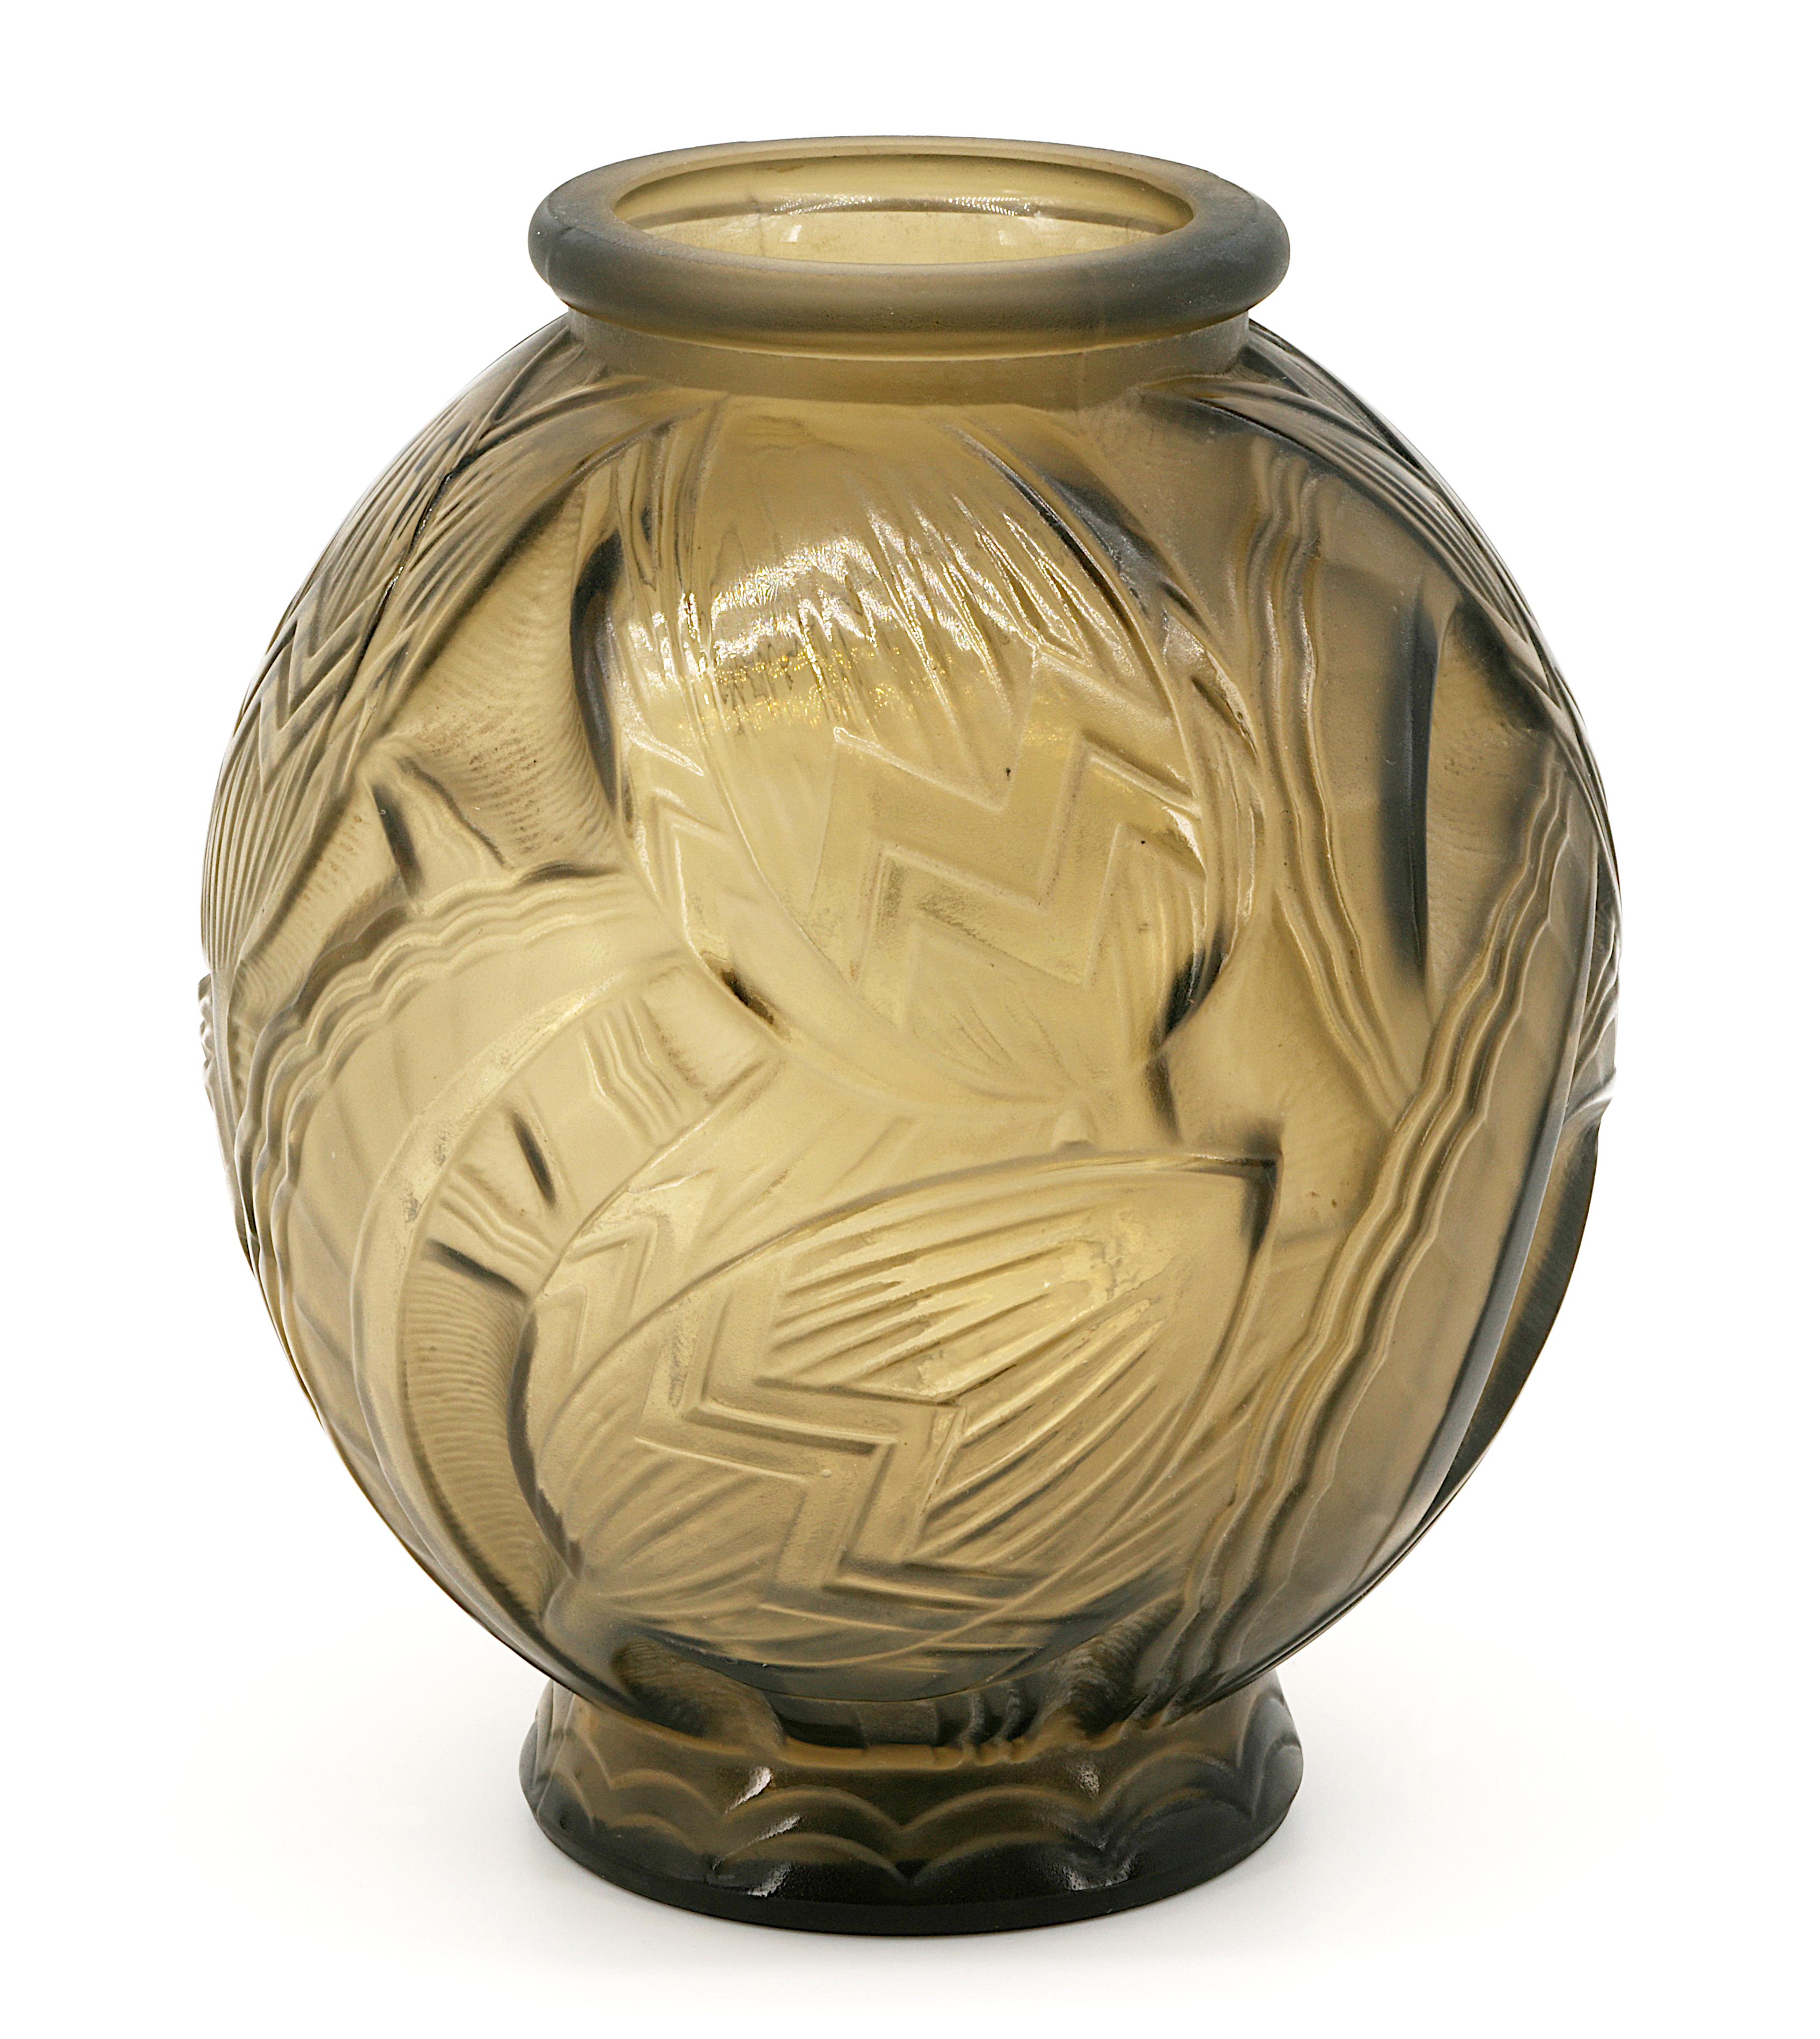 Französische Art-Déco-Vase von PIERRE D'AVESN, Frankreich, 1926-1930. Mattiertes Pressglas mit Blumenmuster. Braun/grüne Farbe. Lila spiegelt sich im Licht. Höhe: 20 cm (7,9